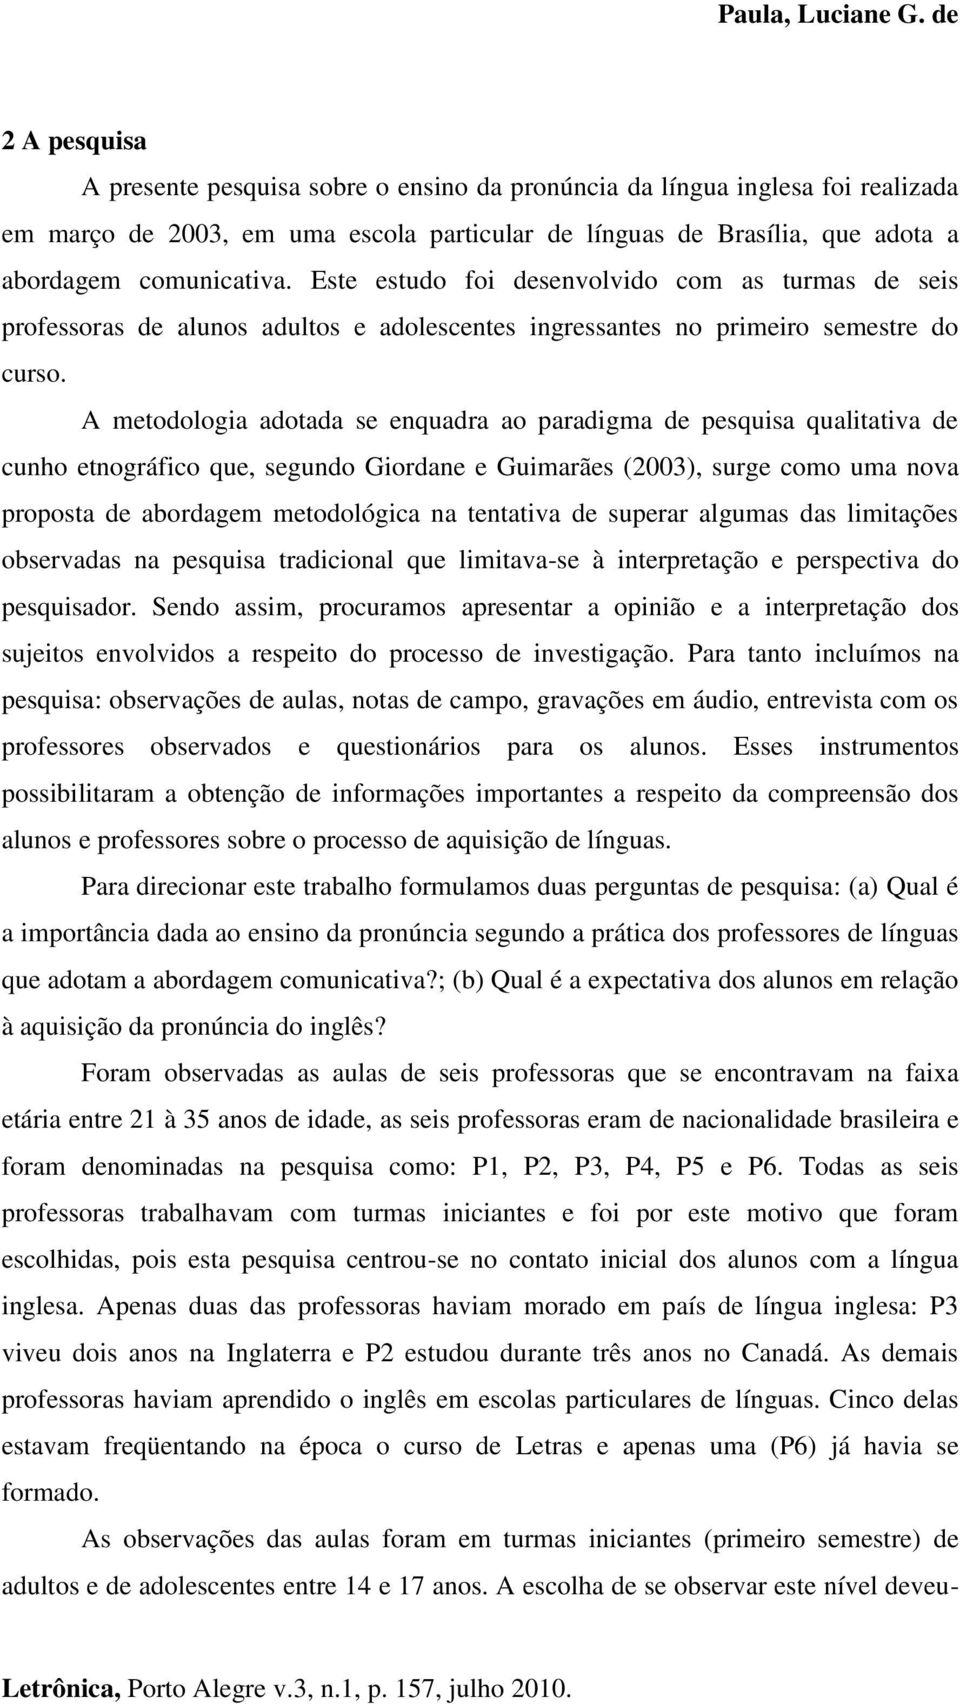 A metodologia adotada se enquadra ao paradigma de pesquisa qualitativa de cunho etnográfico que, segundo Giordane e Guimarães (2003), surge como uma nova proposta de abordagem metodológica na